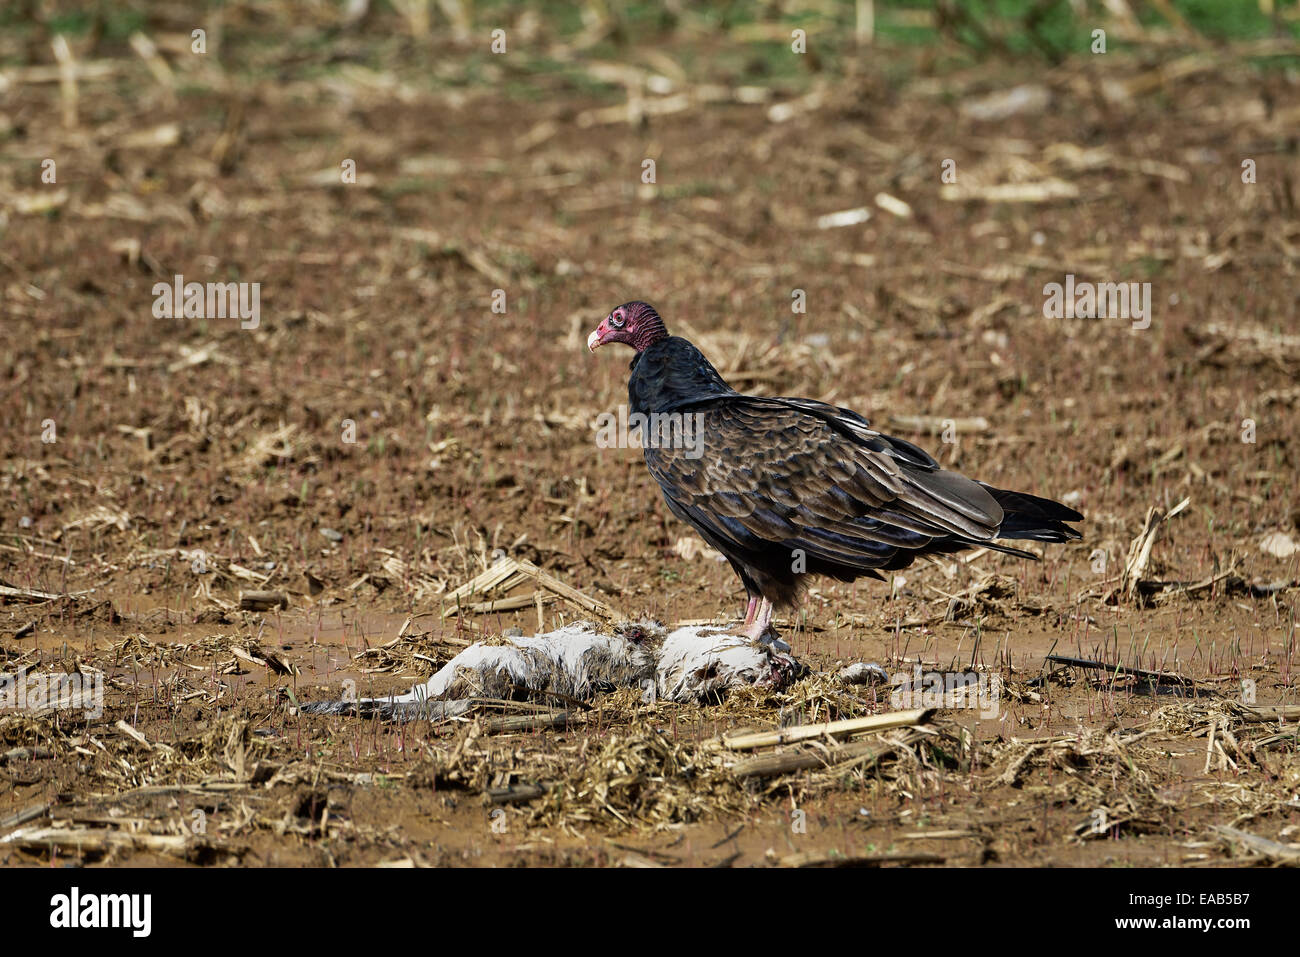 La turquie se nourrissant de buzzard la carcasse d'un animal mort. Banque D'Images